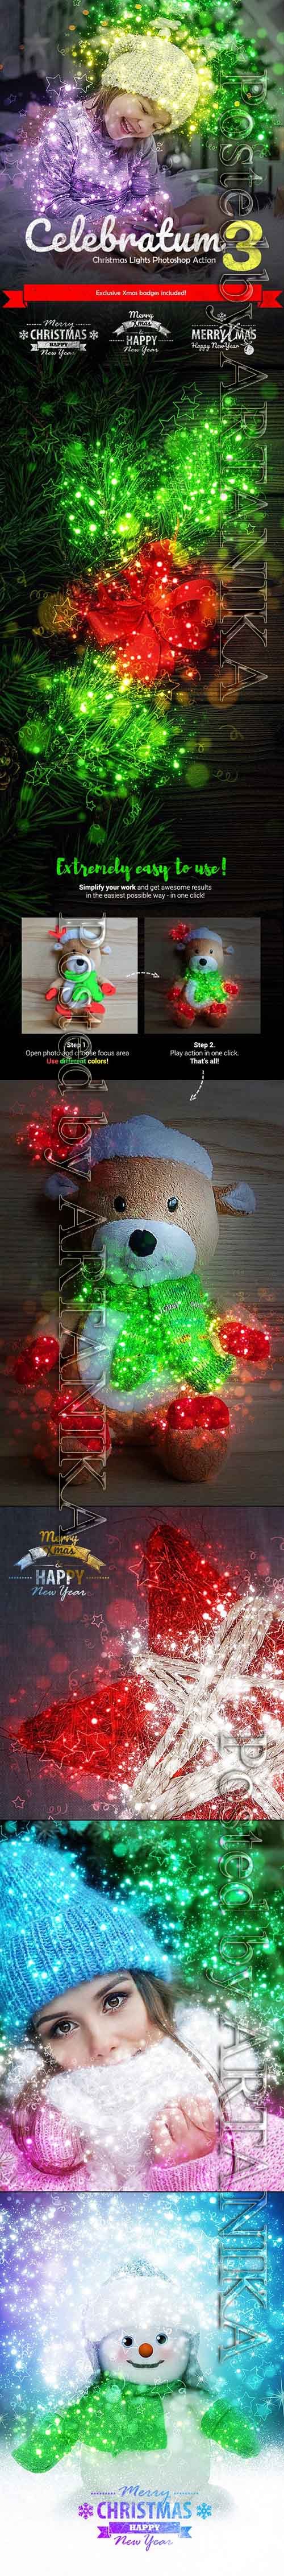 GR - Celebratum 3 - Christmas Lights Photoshop Action 22863016